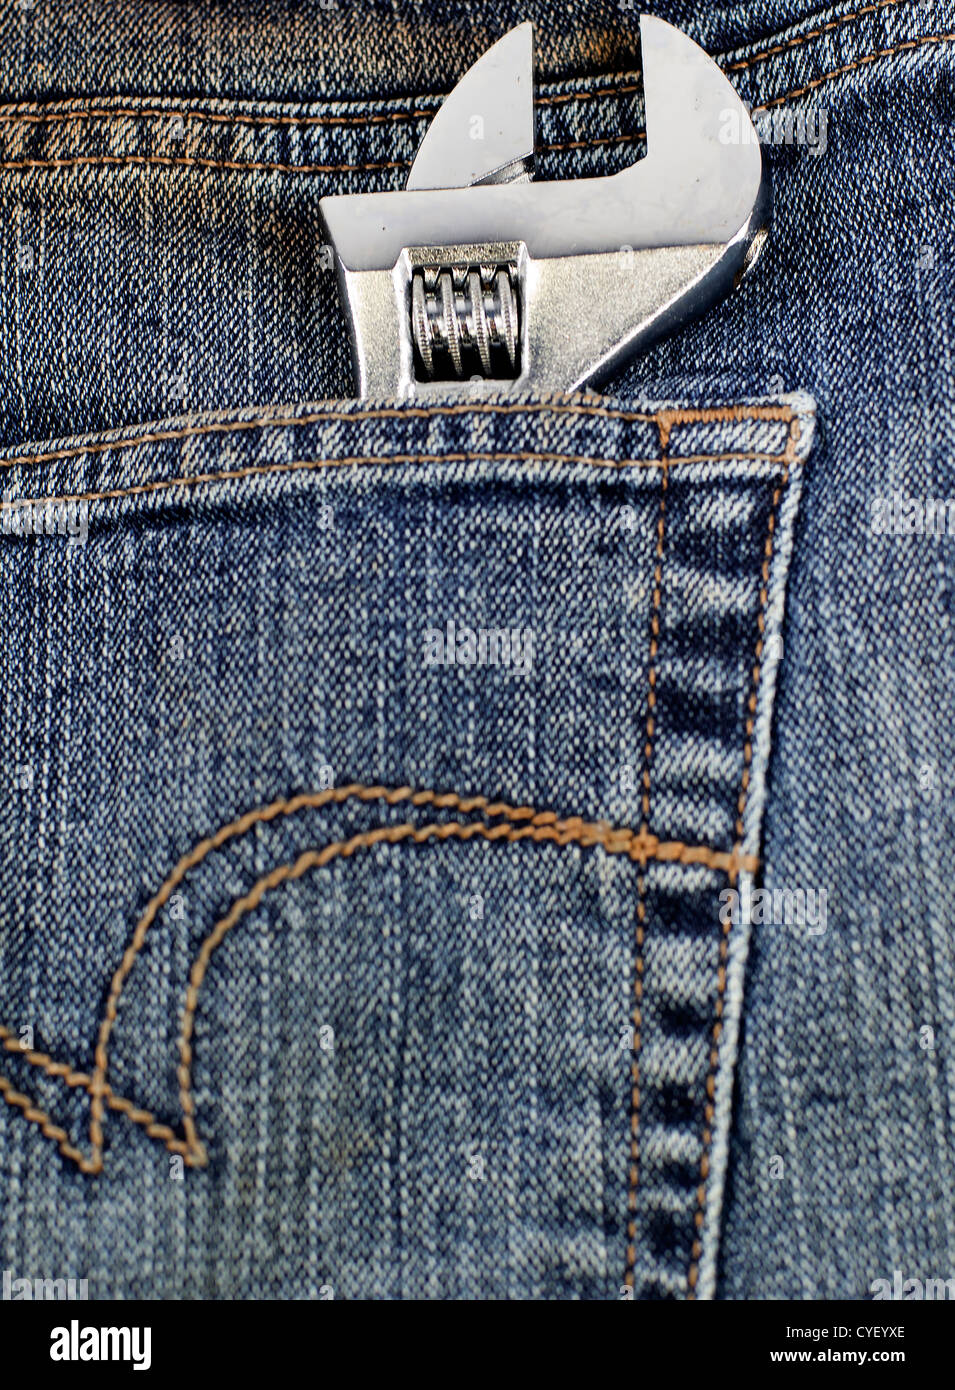 Une clé réglable dans une poche de jeans Banque D'Images